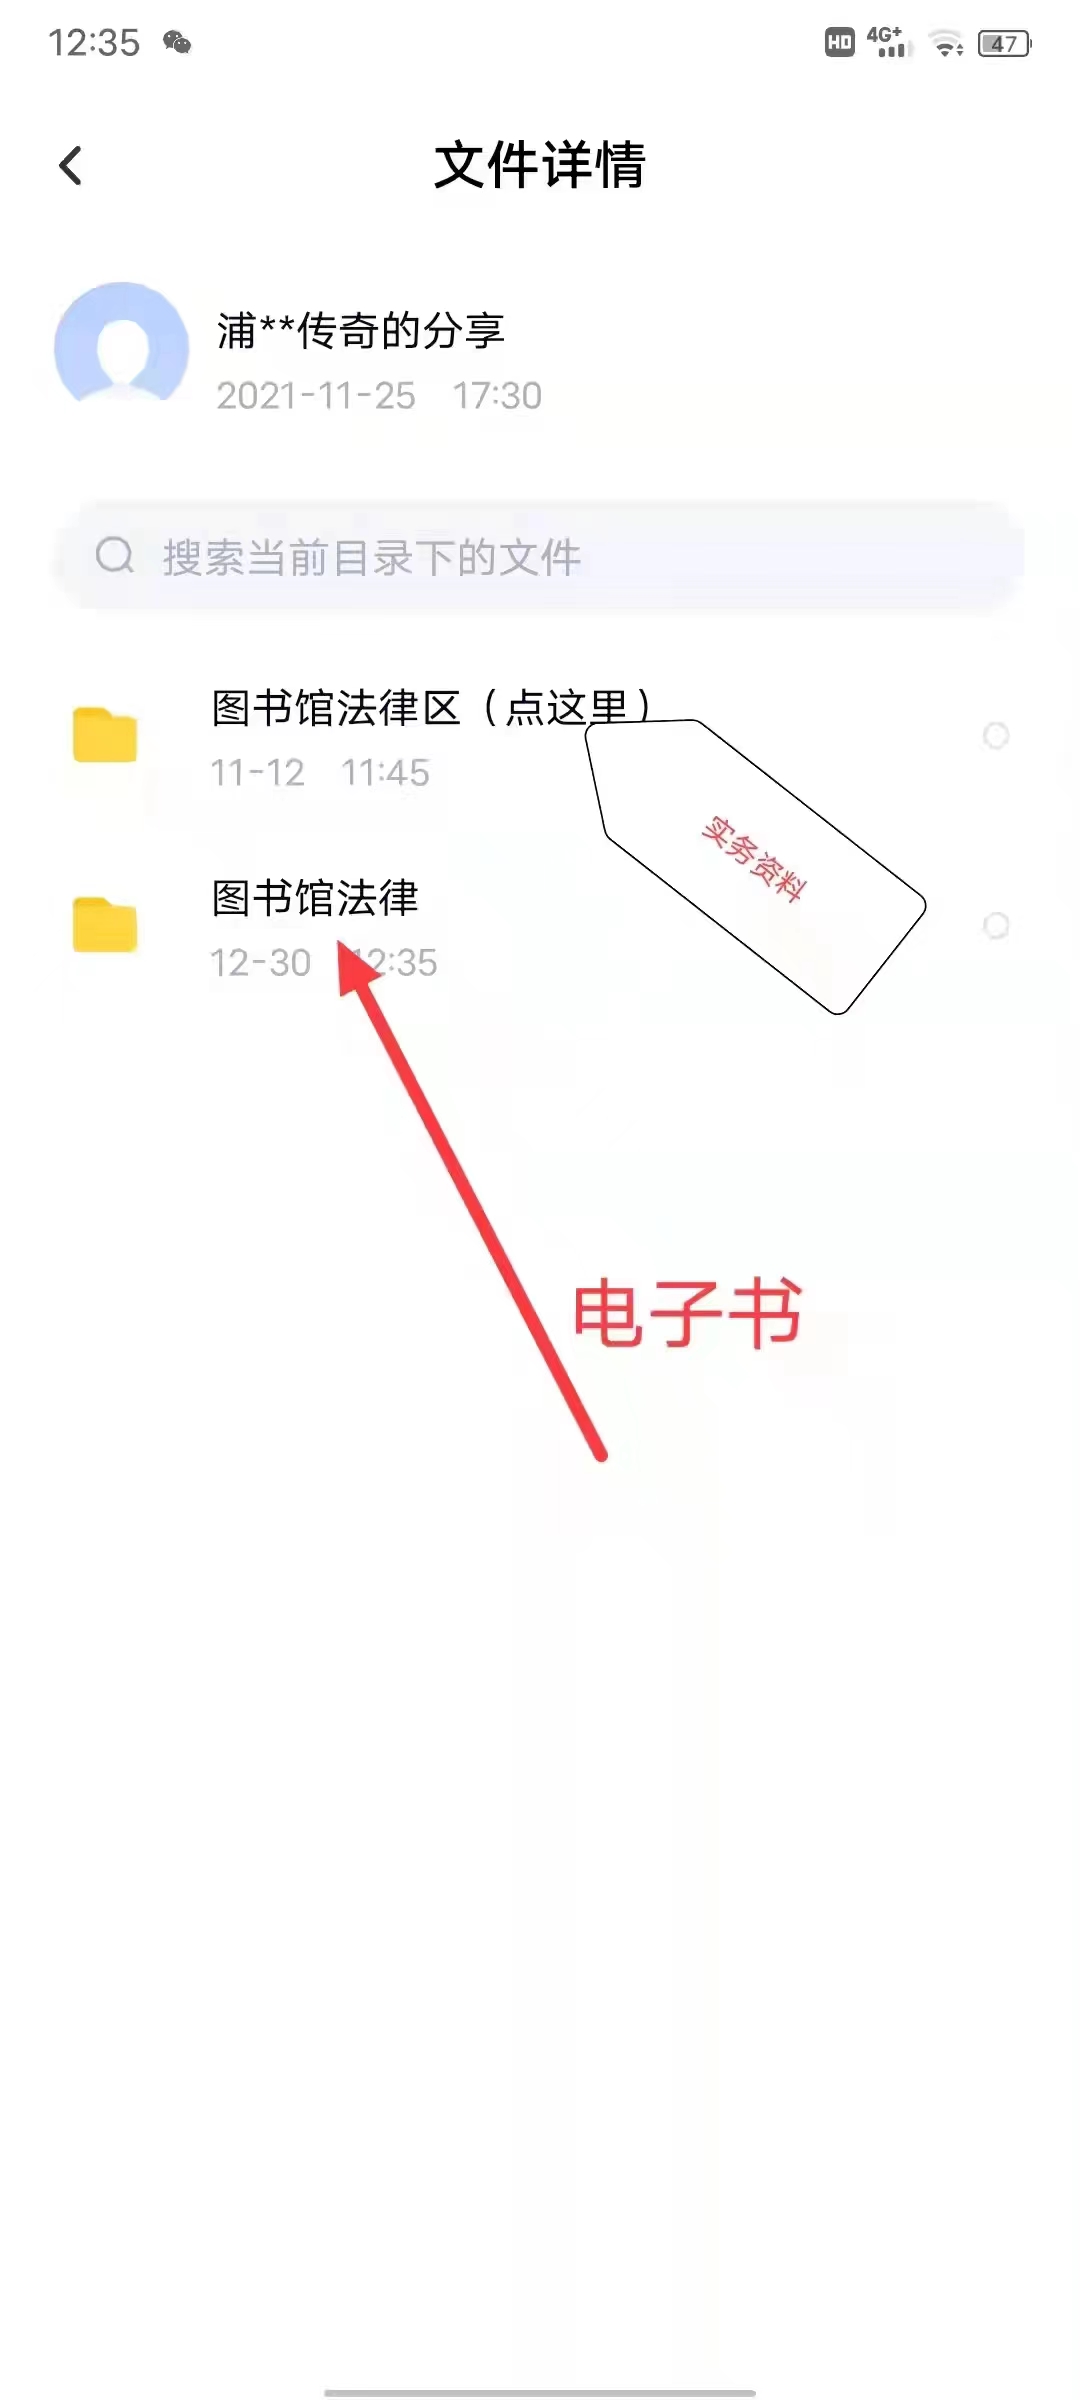 【法律】【PDF】059 上海法院类案办案要件指南 1册 茆荣华